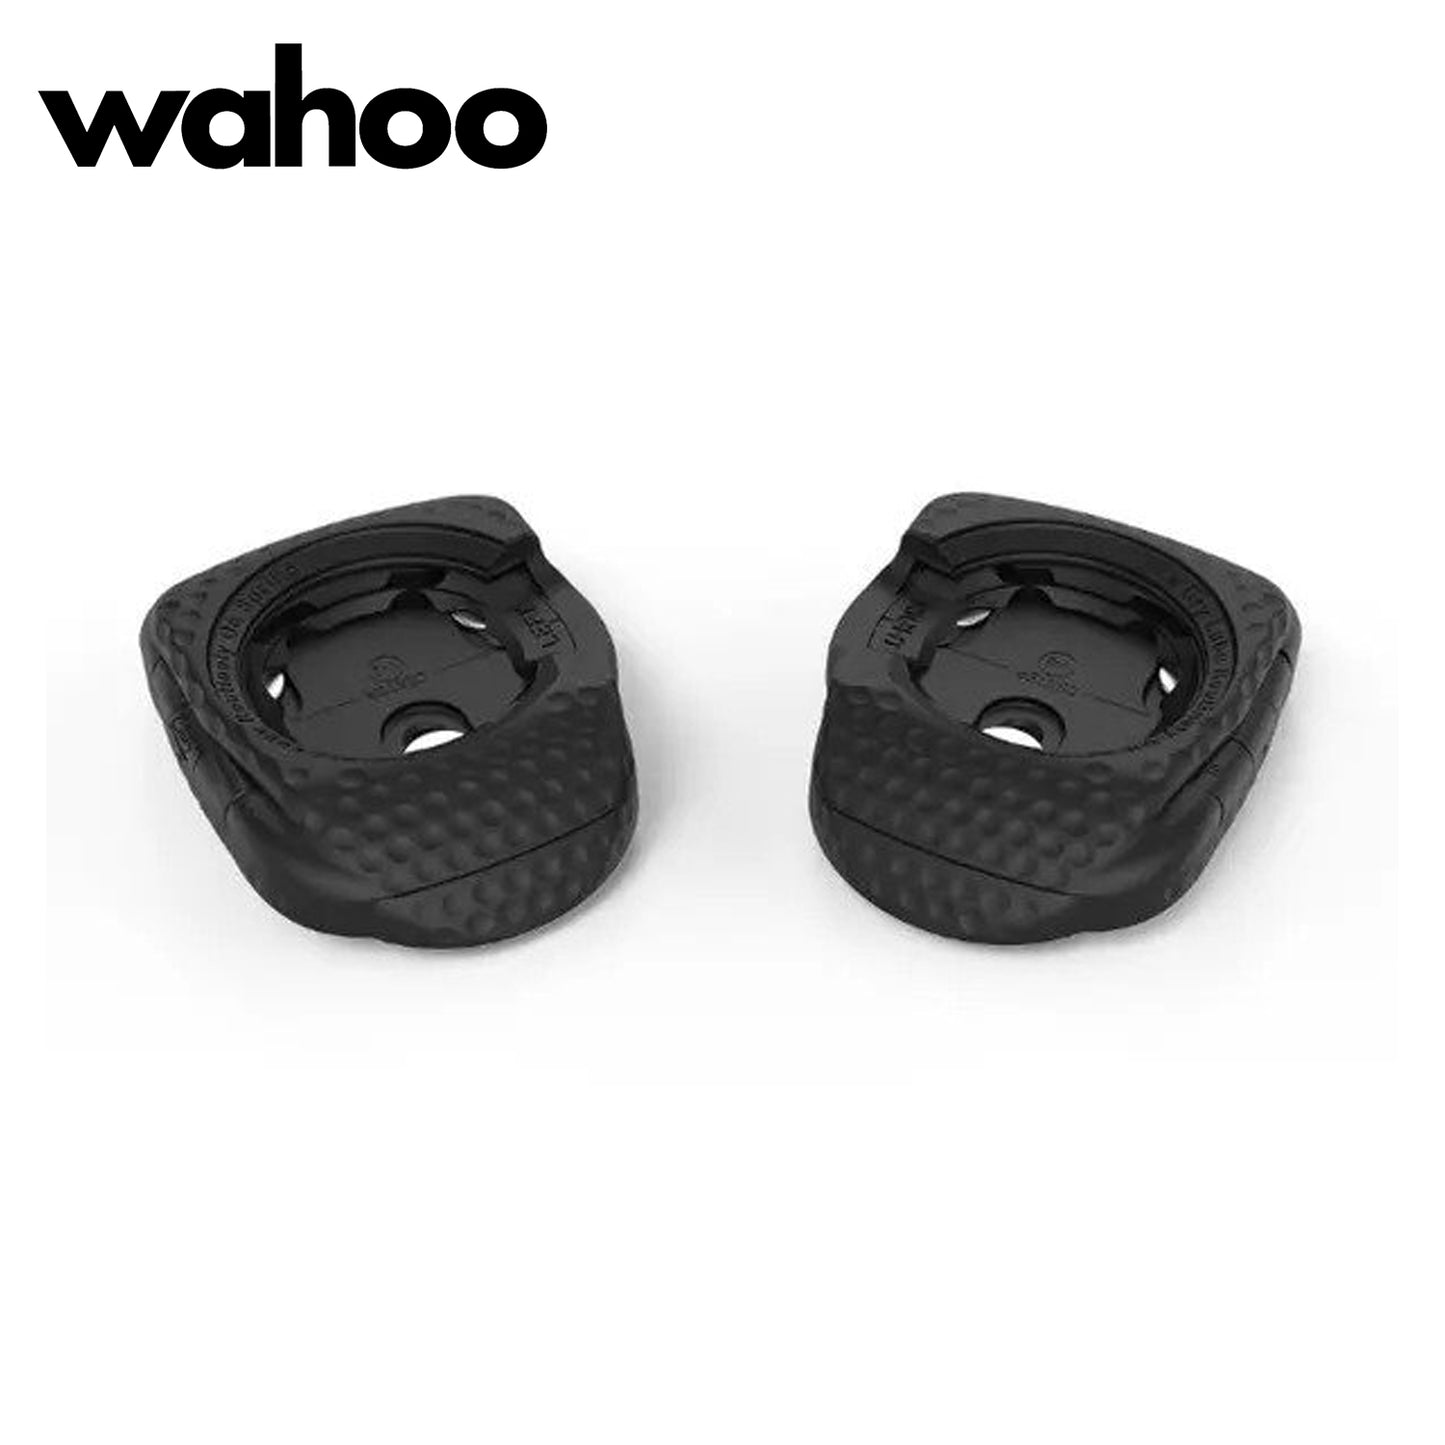 Wahoo POWRLINK Zero Single-Sided Bike Power Pedals